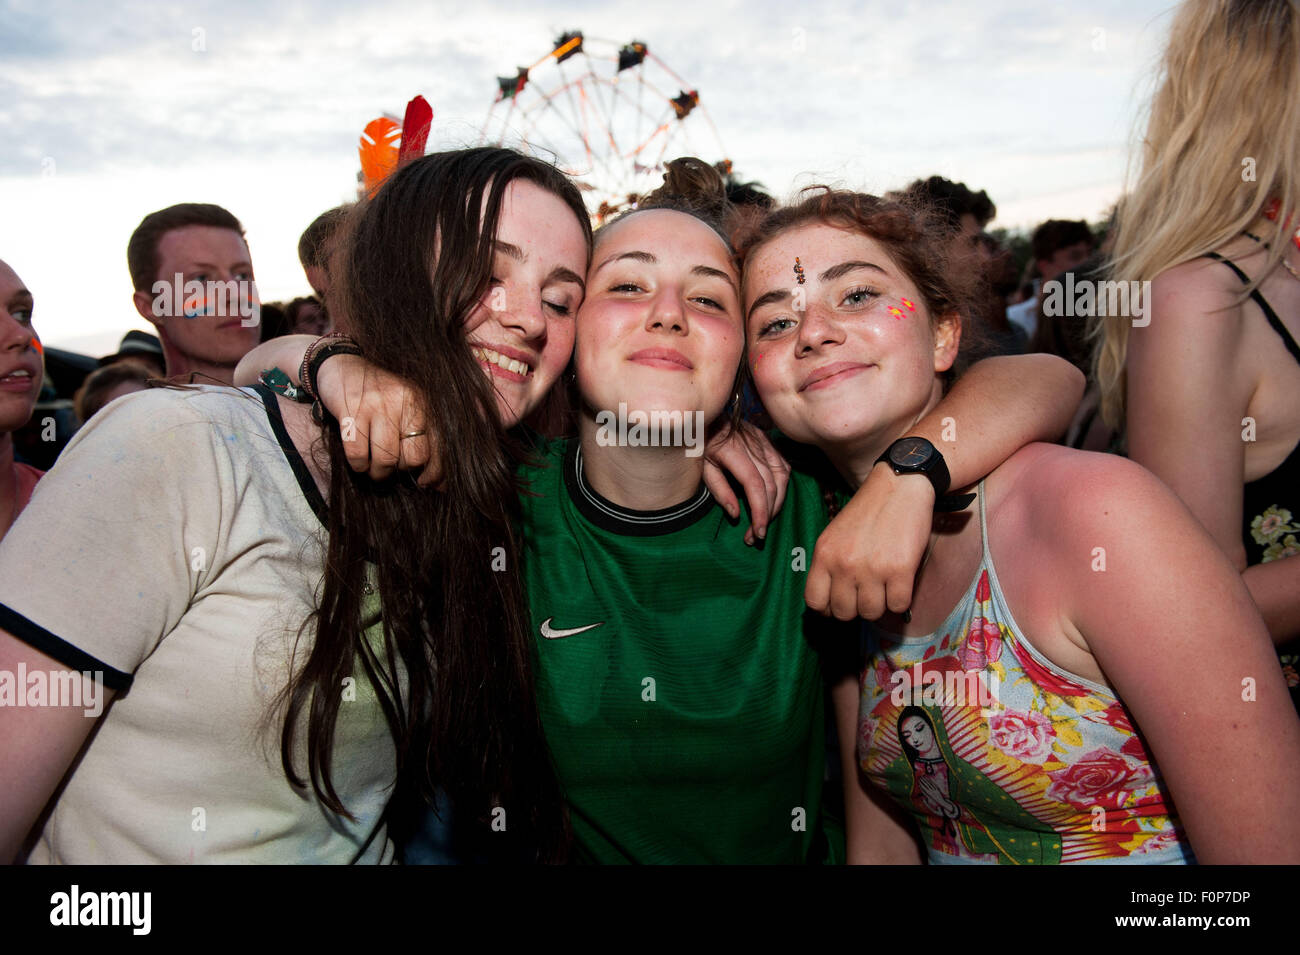 Adolescentes au Truck Festival, Oxfordshire, Grande-Bretagne Banque D'Images